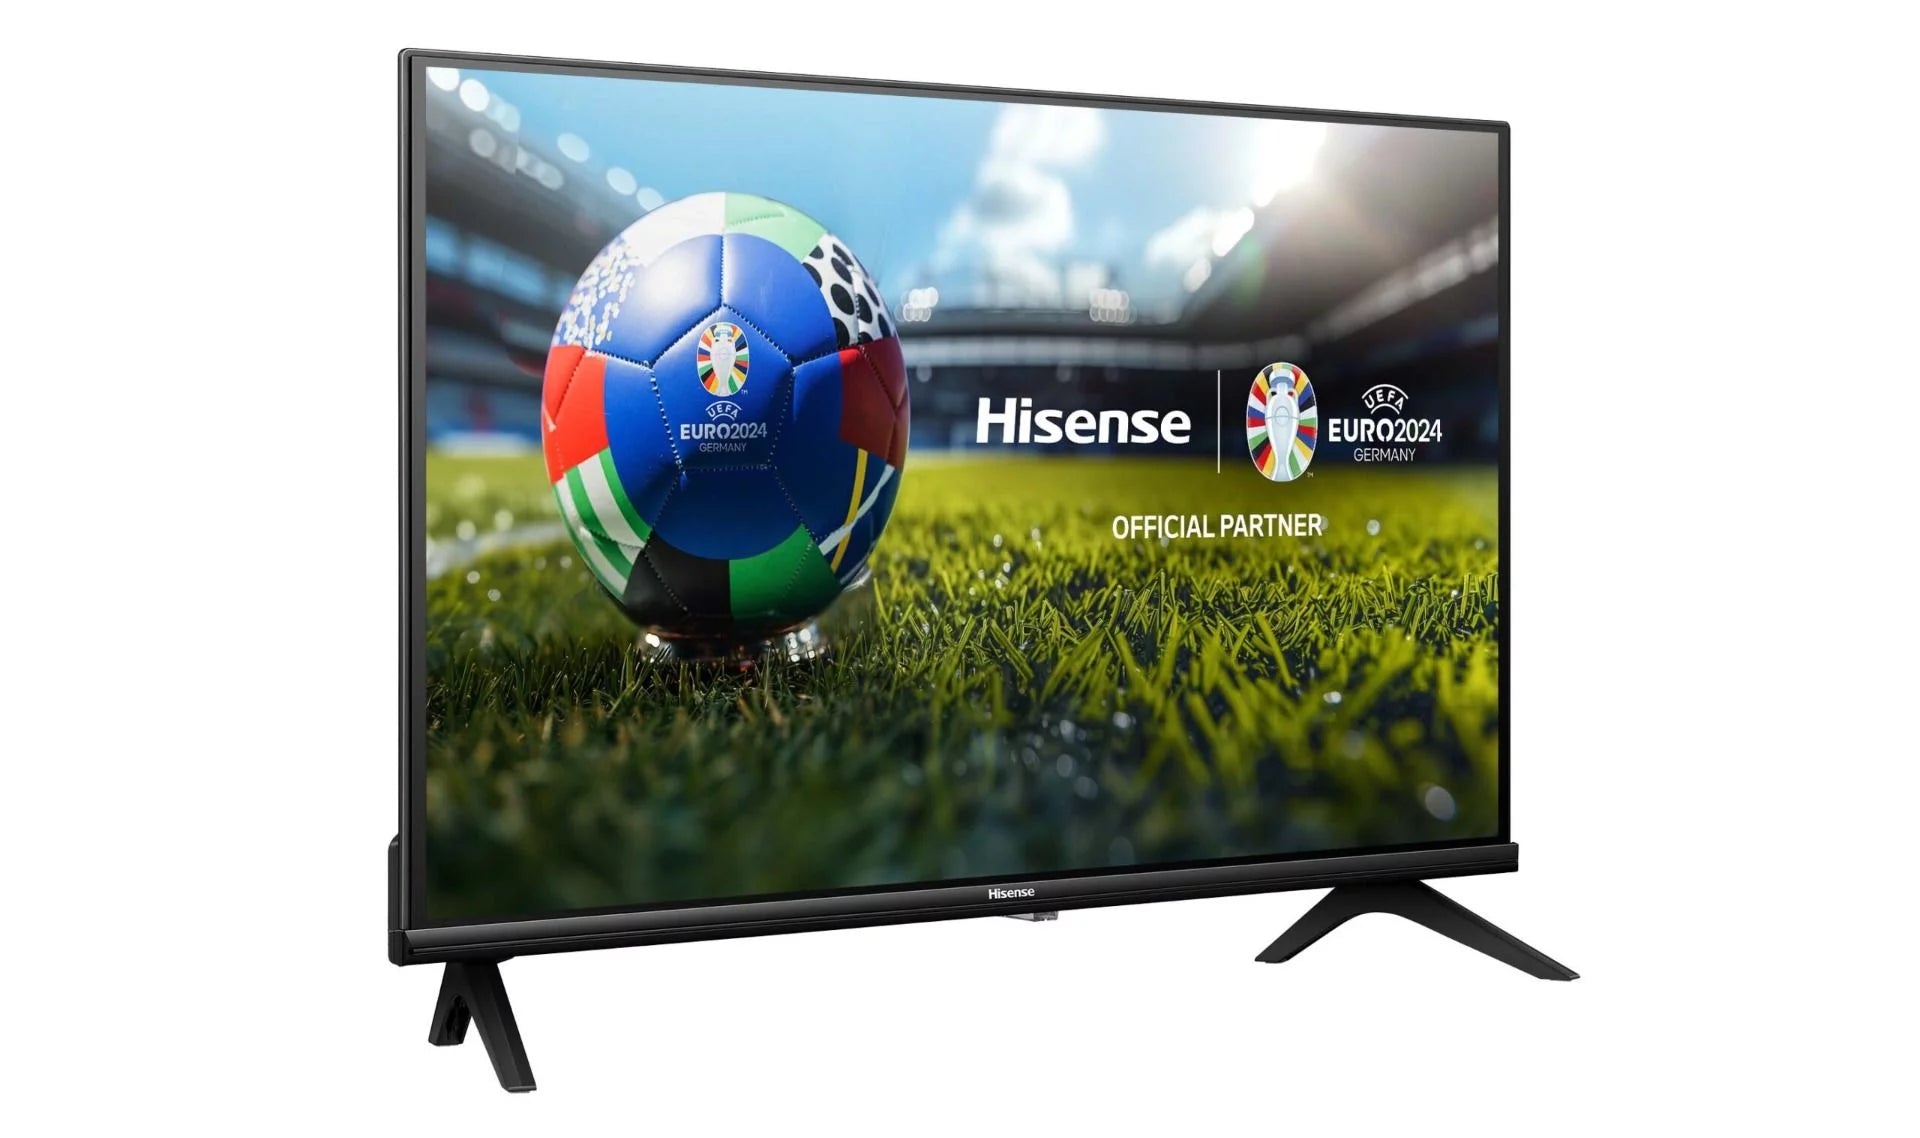 Hisense 32" Smart LED TV